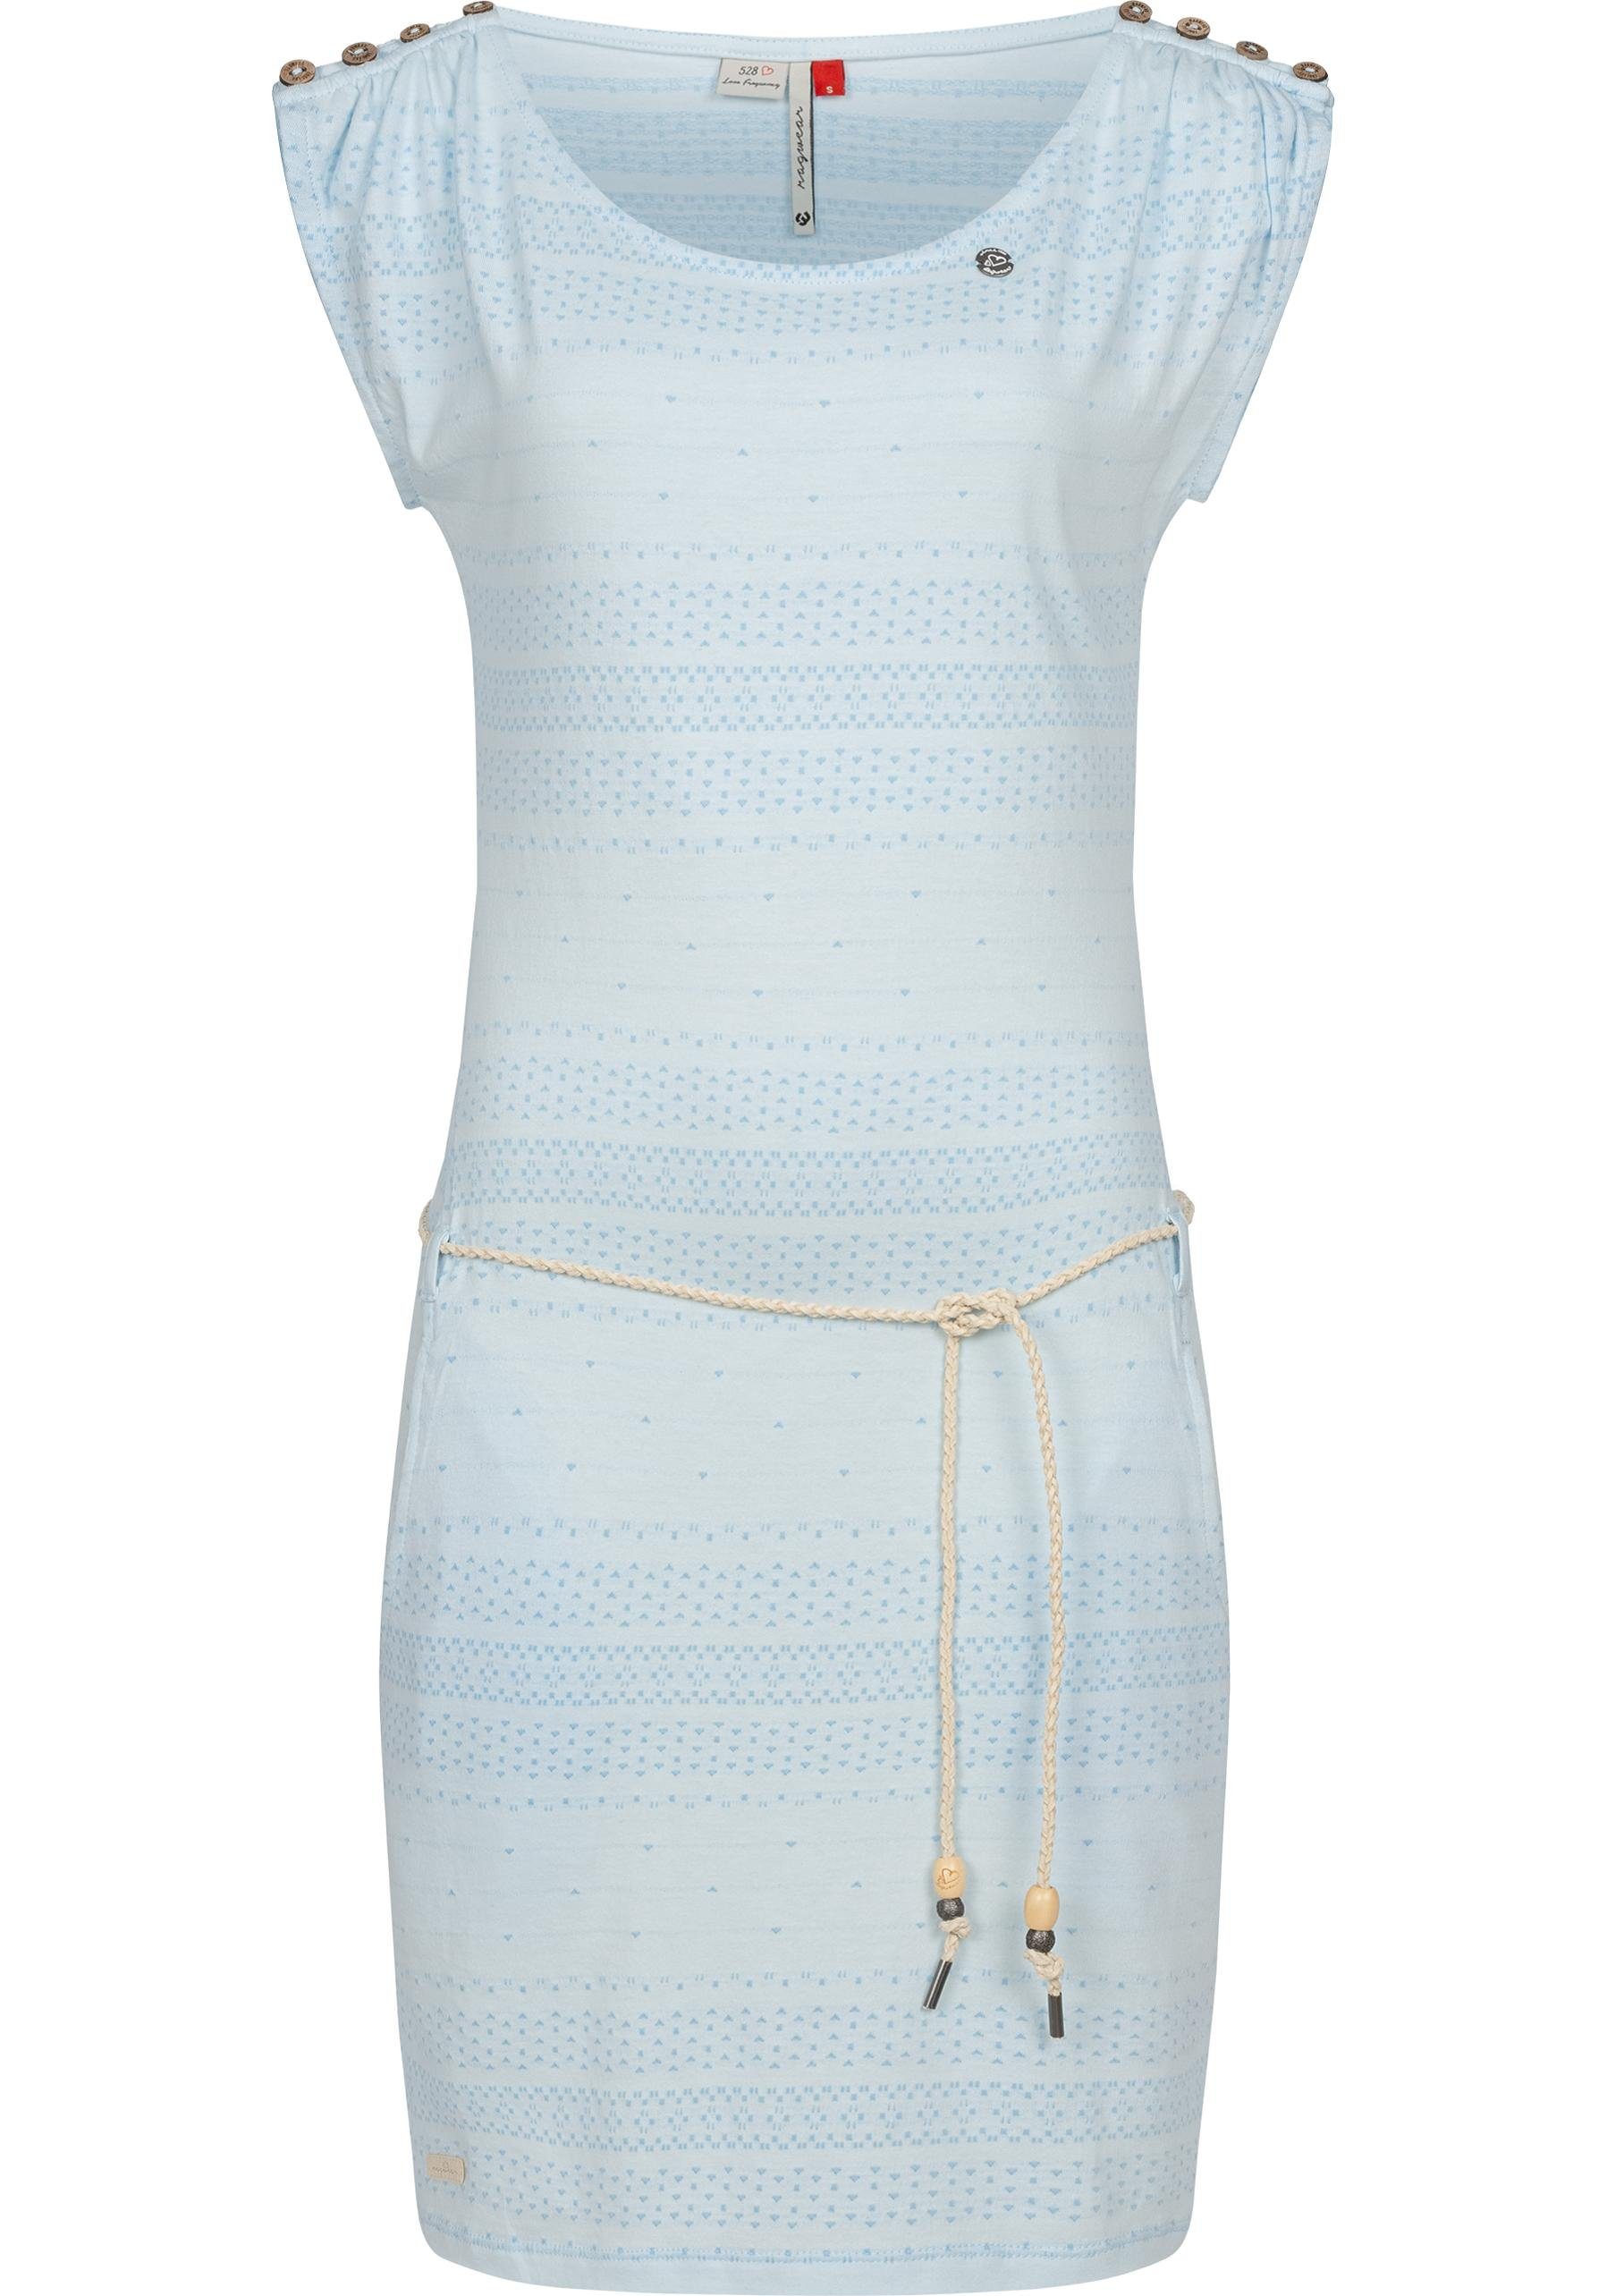 Einkaufen genießen Chego Sommerkleid Shirtkleid Bindeband stylisches Ragwear mit babyblau